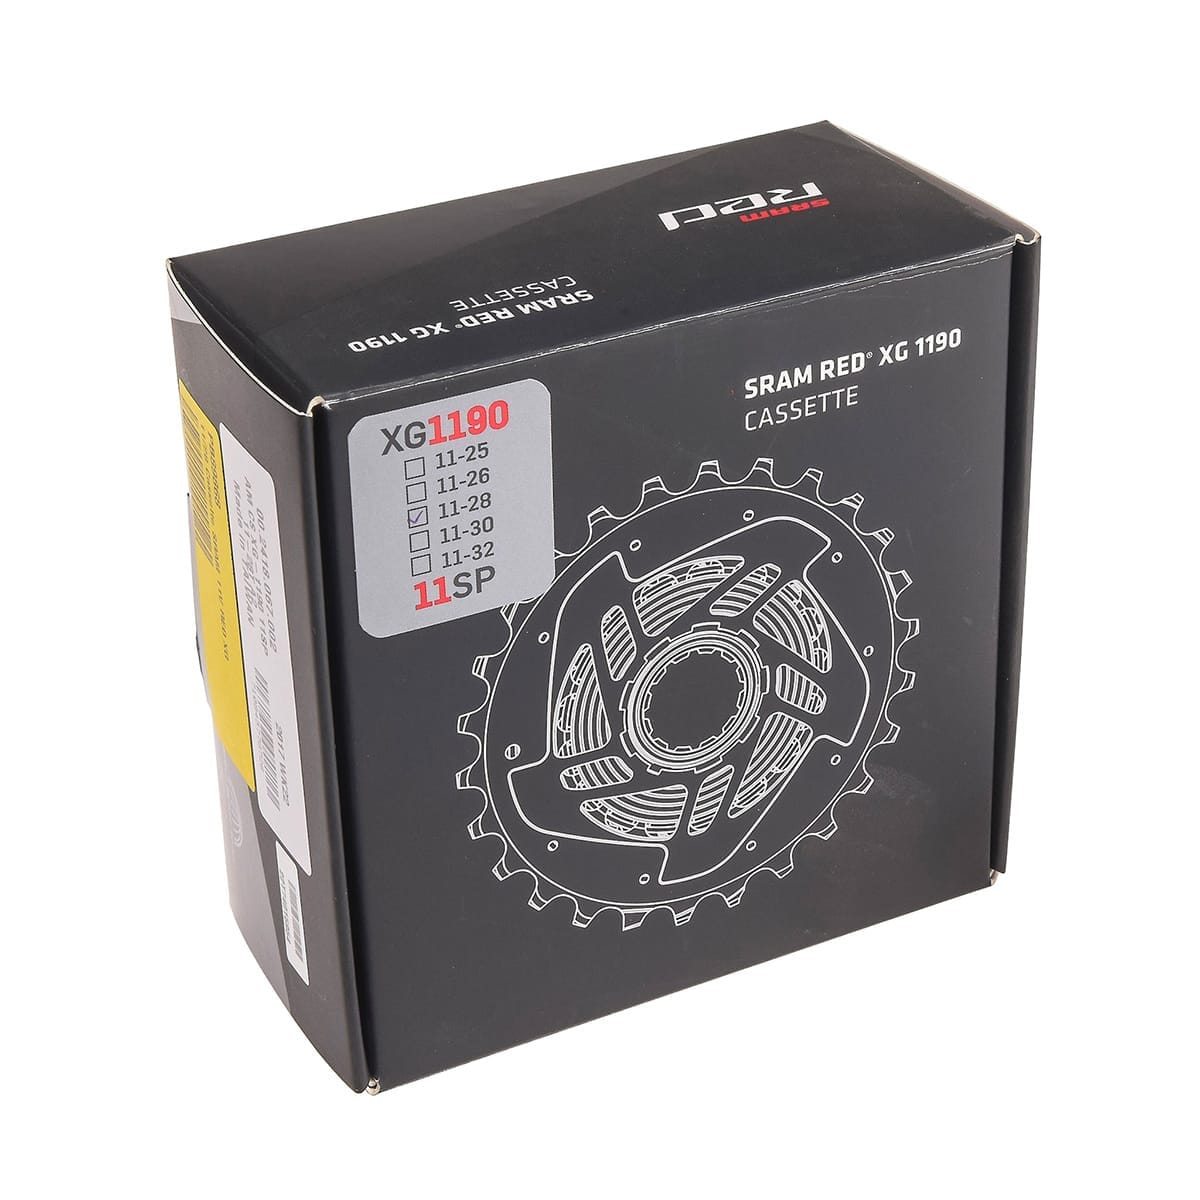 Cassette 11V SRAM XG-1190 RED 22